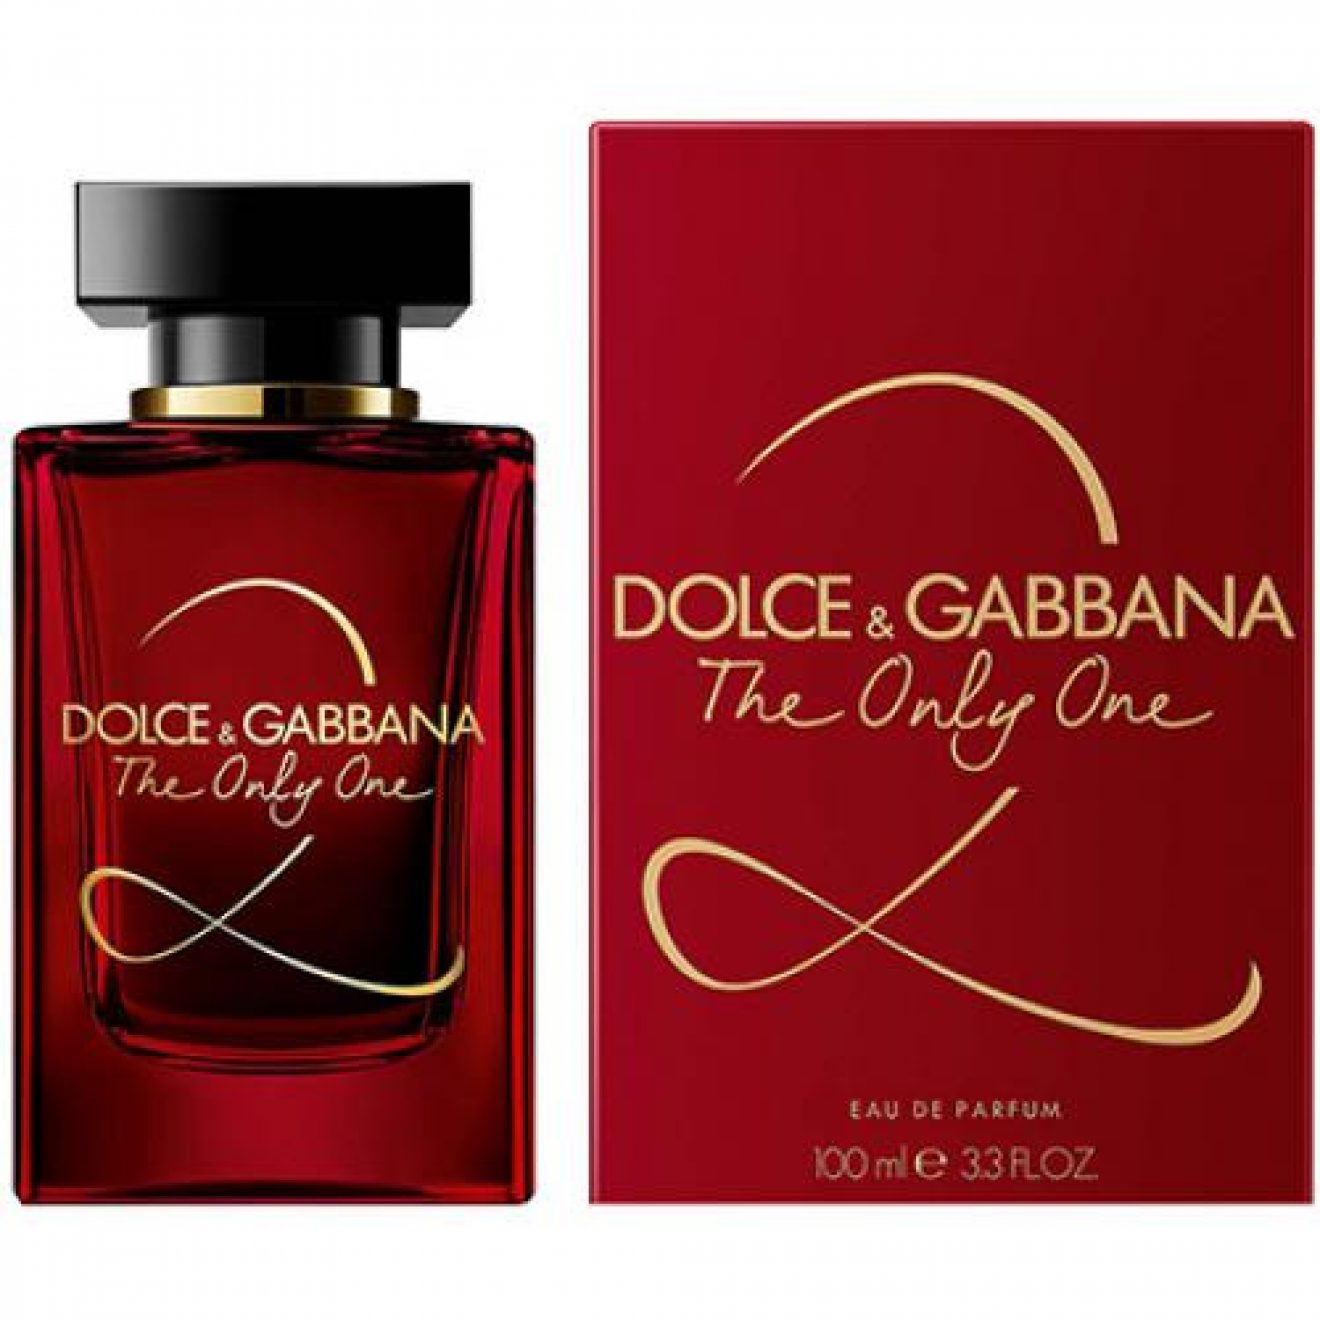 Аромат дольче габбана отзывы. Dolce Gabbana the only one 2 100 мл. Dolce & Gabbana the only one, EDP., 100 ml. Аромат Dolce Gabbana the only one 2 красный. Dolce& Gabbana the only one 2 EDP, 100 ml.